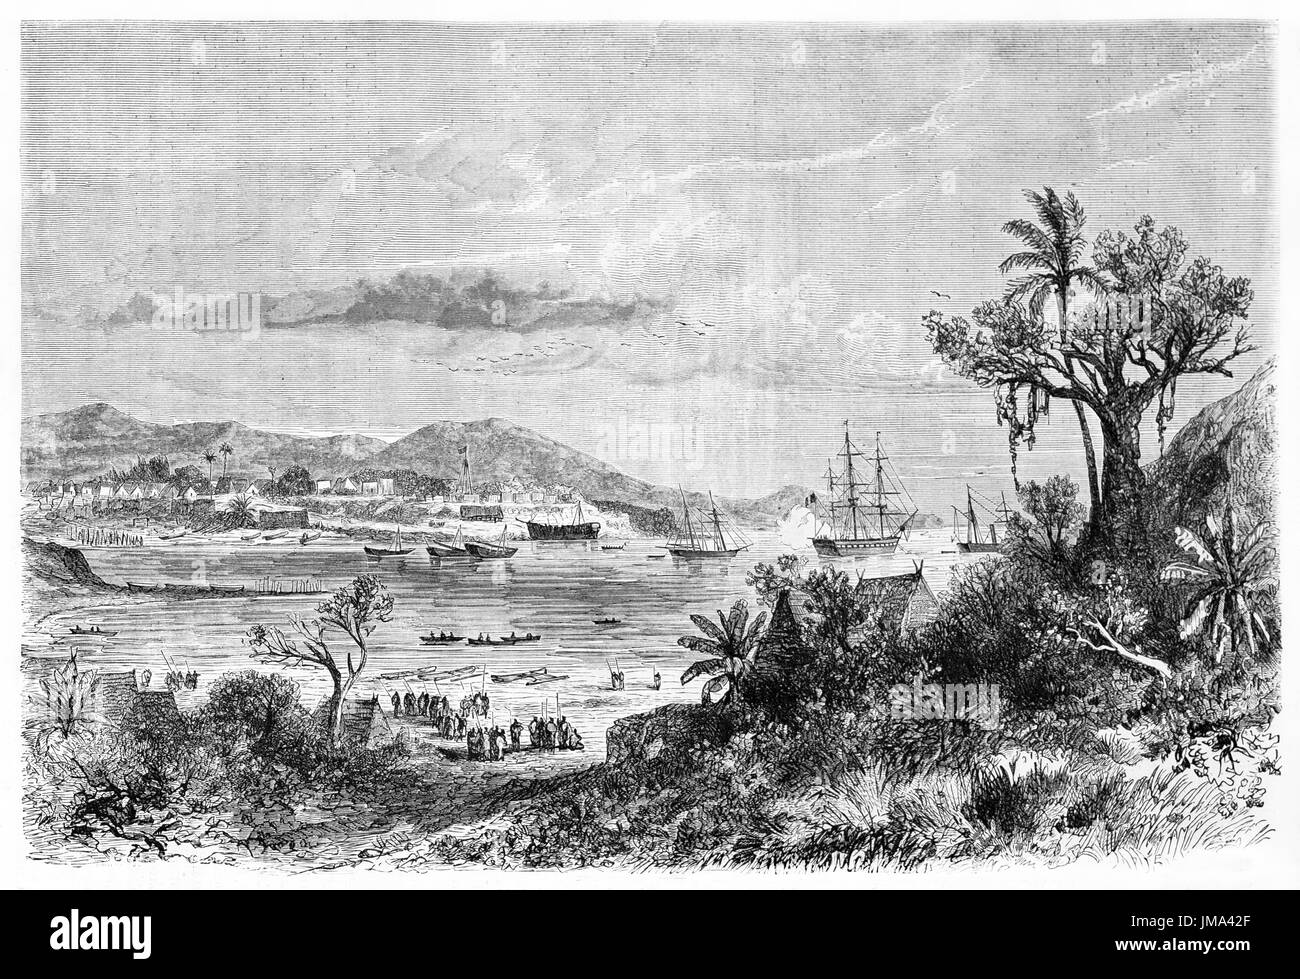 Große Meereslandschaft mit Schiffen, die auf dem Golf von Nosy Be, der kleinen Insel der Nordwestküste Madagaskars, absegeln. Kunst von Bérard, Le Tour du Monde,1861 Stockfoto